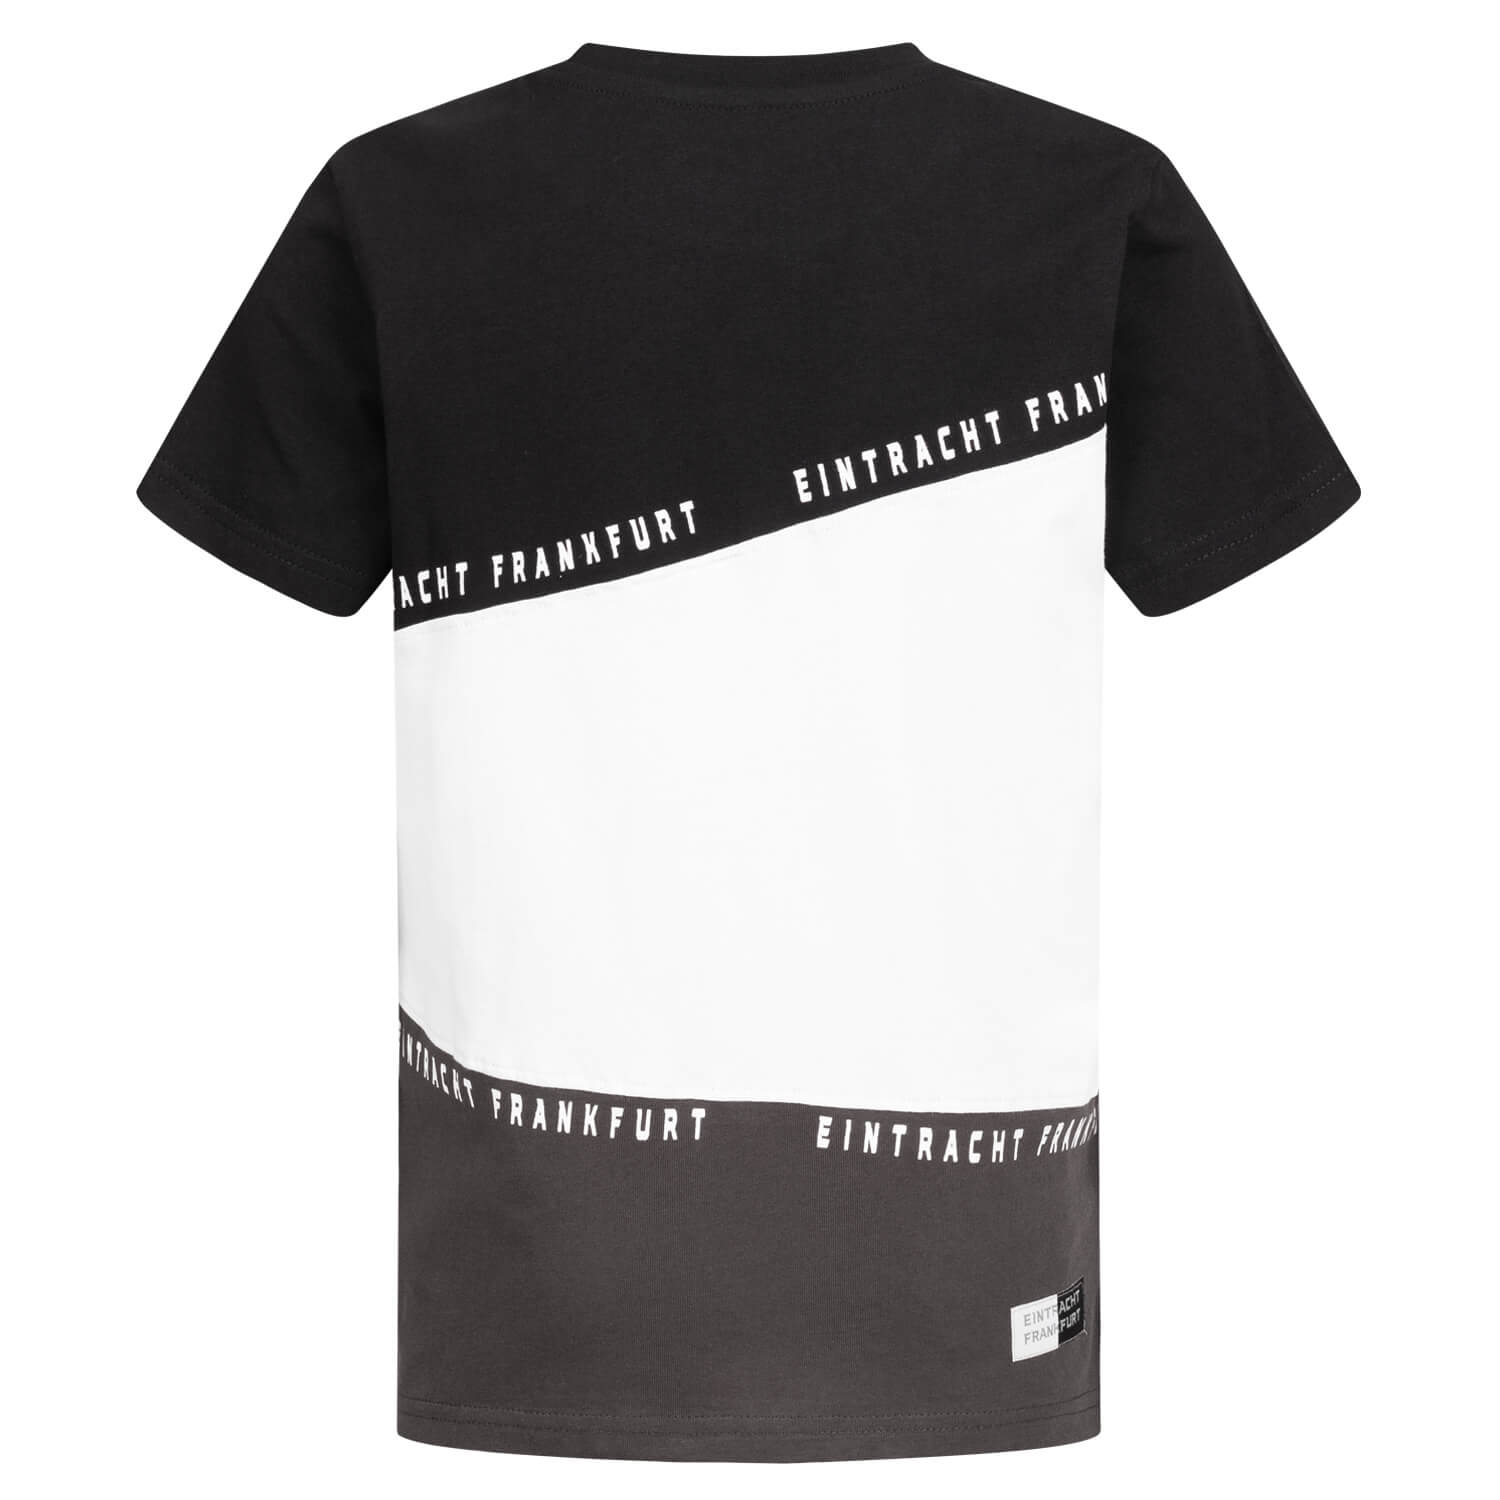 Bild 2: Kids T-Shirt black & white